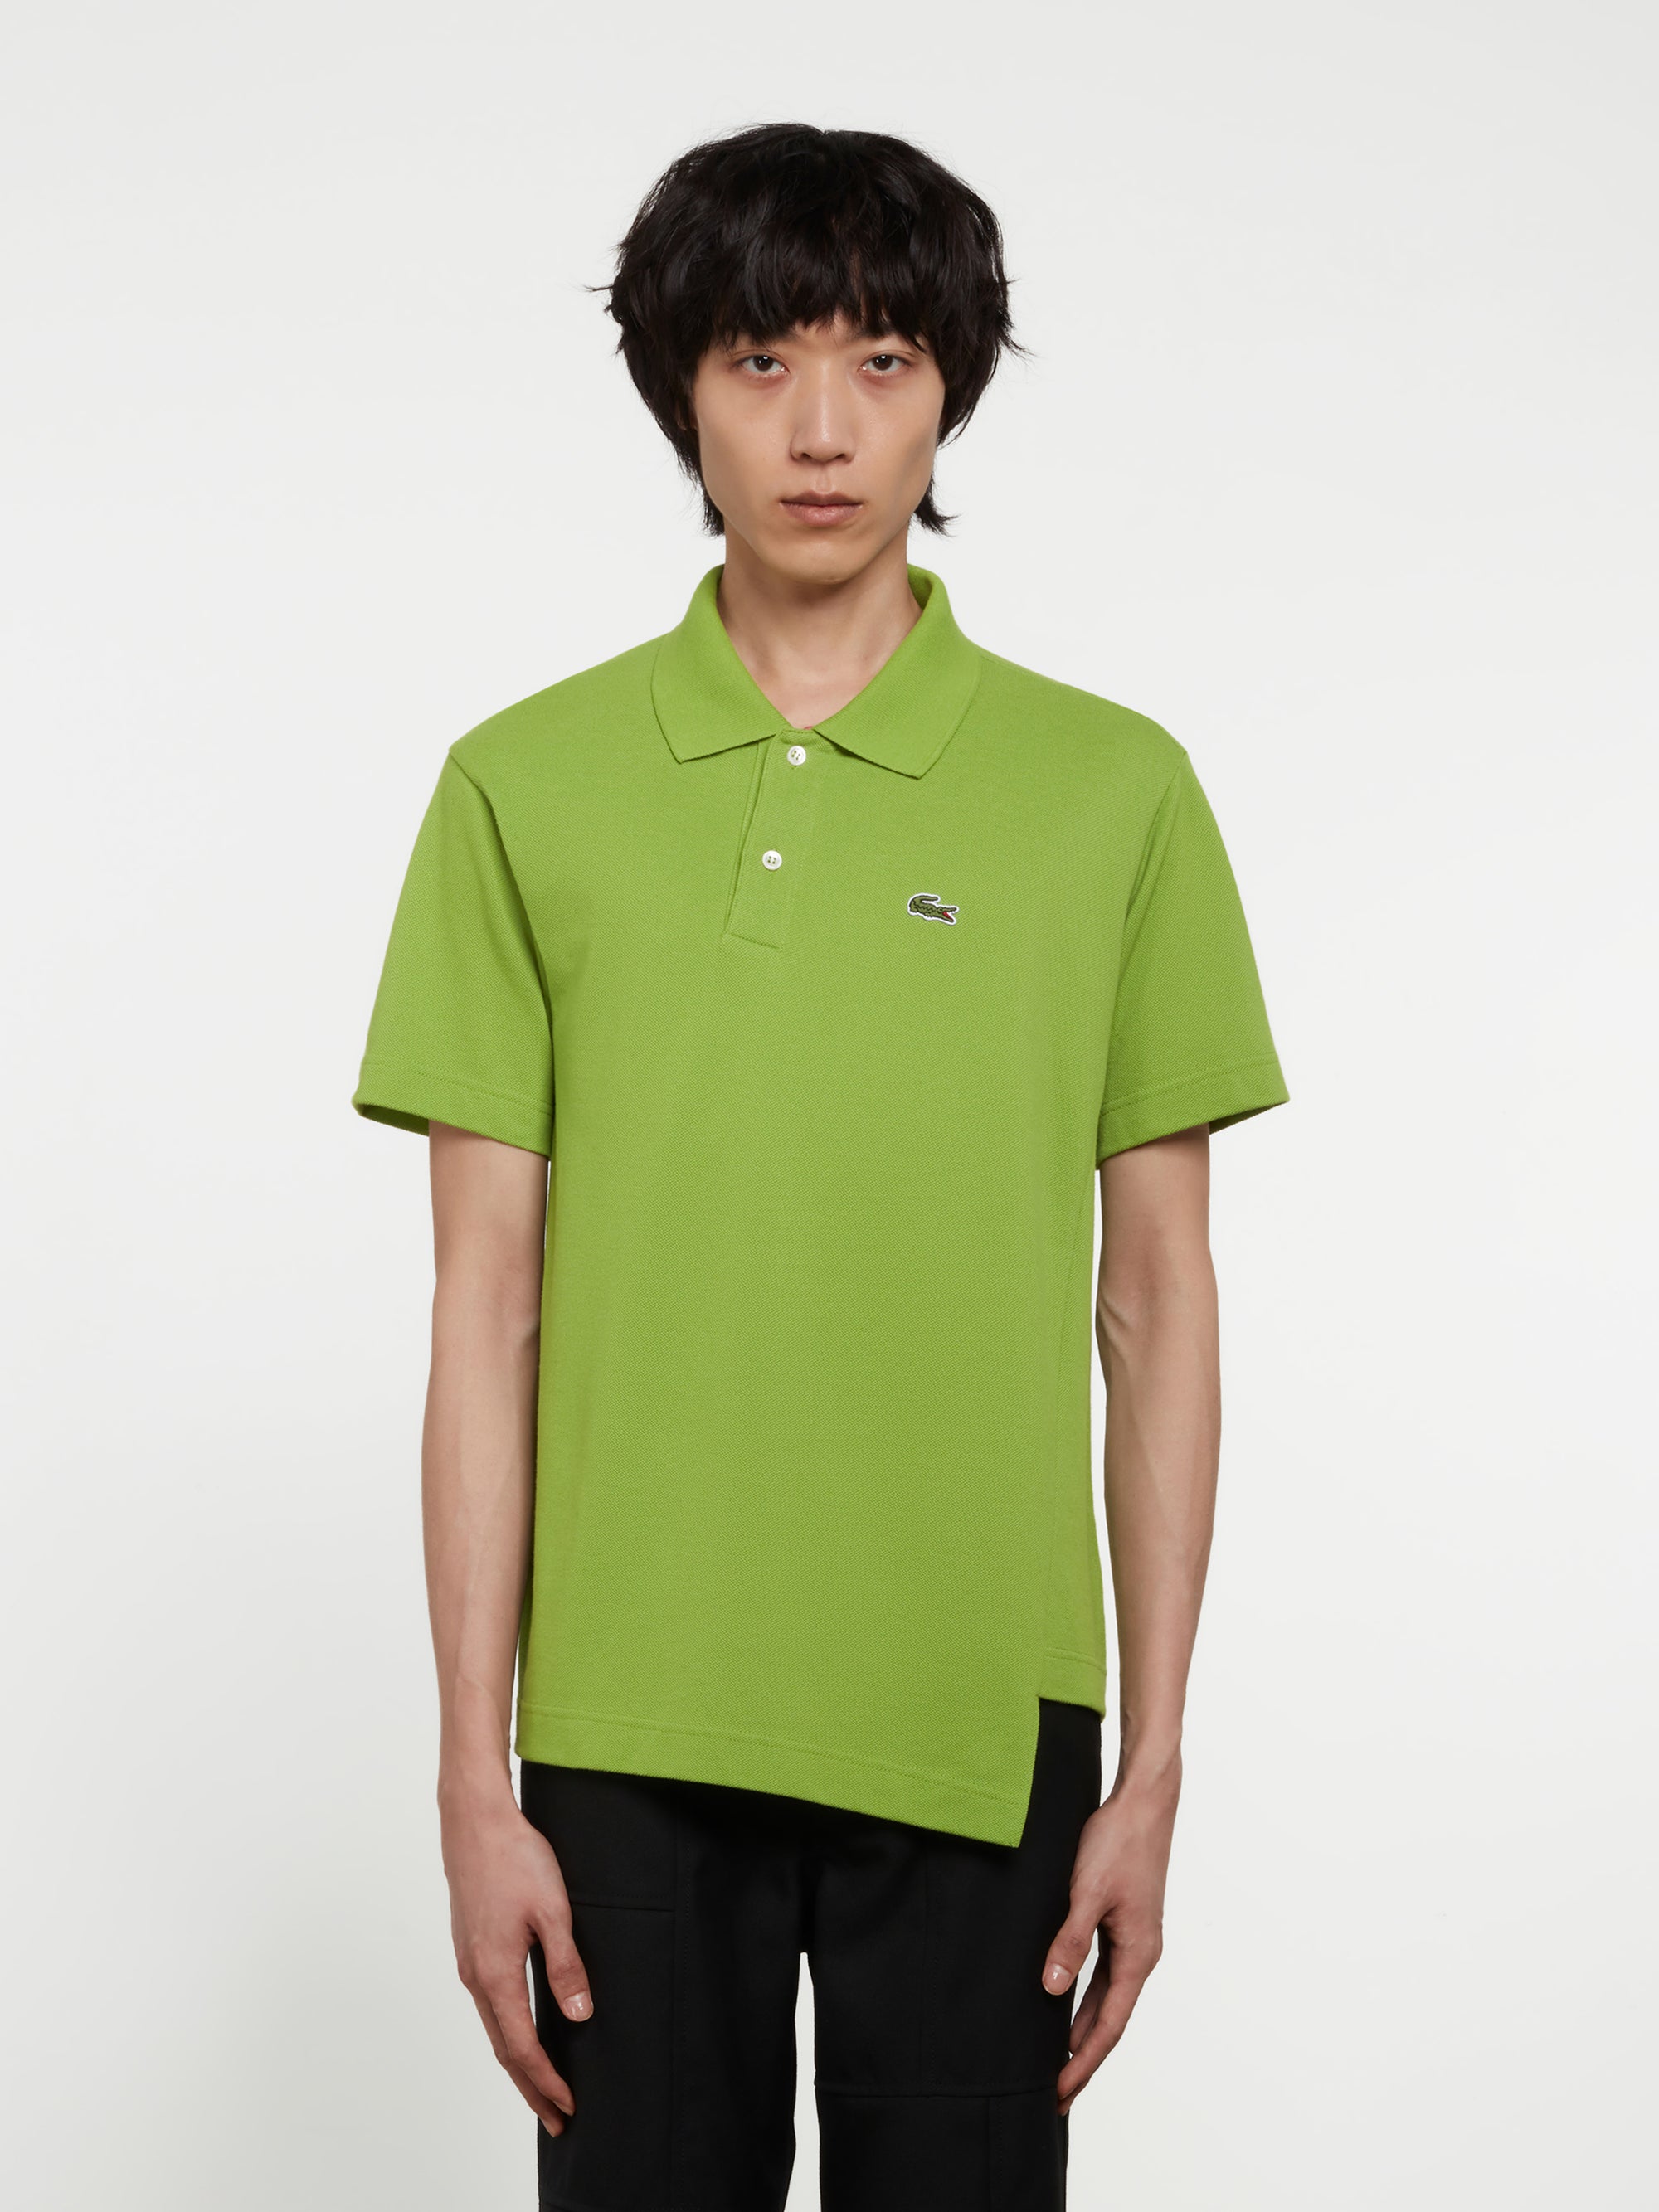 CDG Shirt - Lacoste Men’s Polo Shirt - (Green) view 1